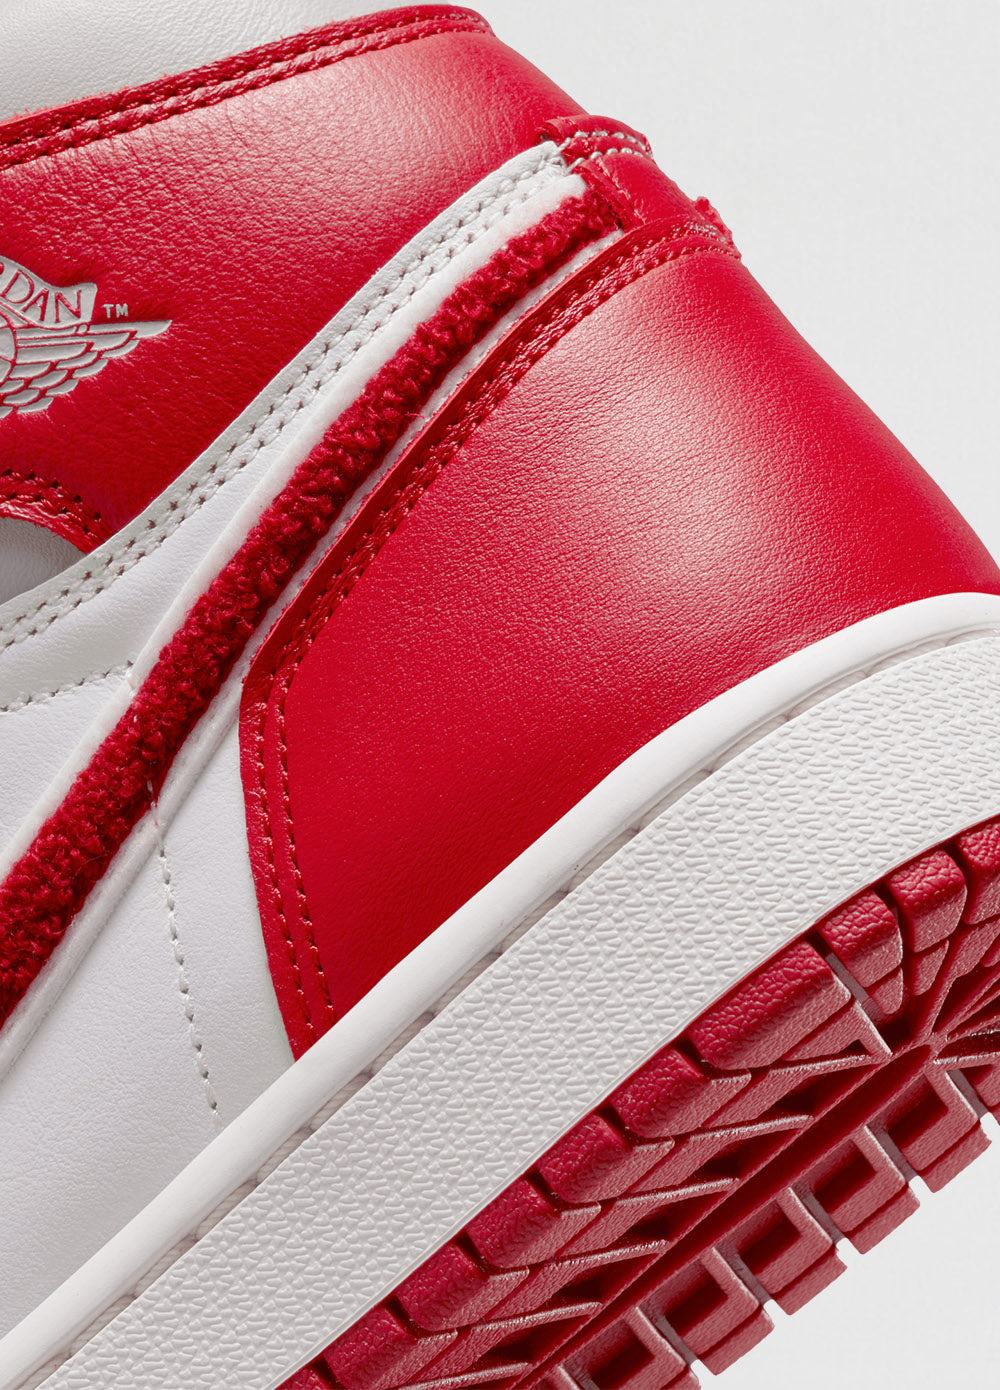 Air Jordan 1 Retro High OG 'Varsity Red' Sneaker